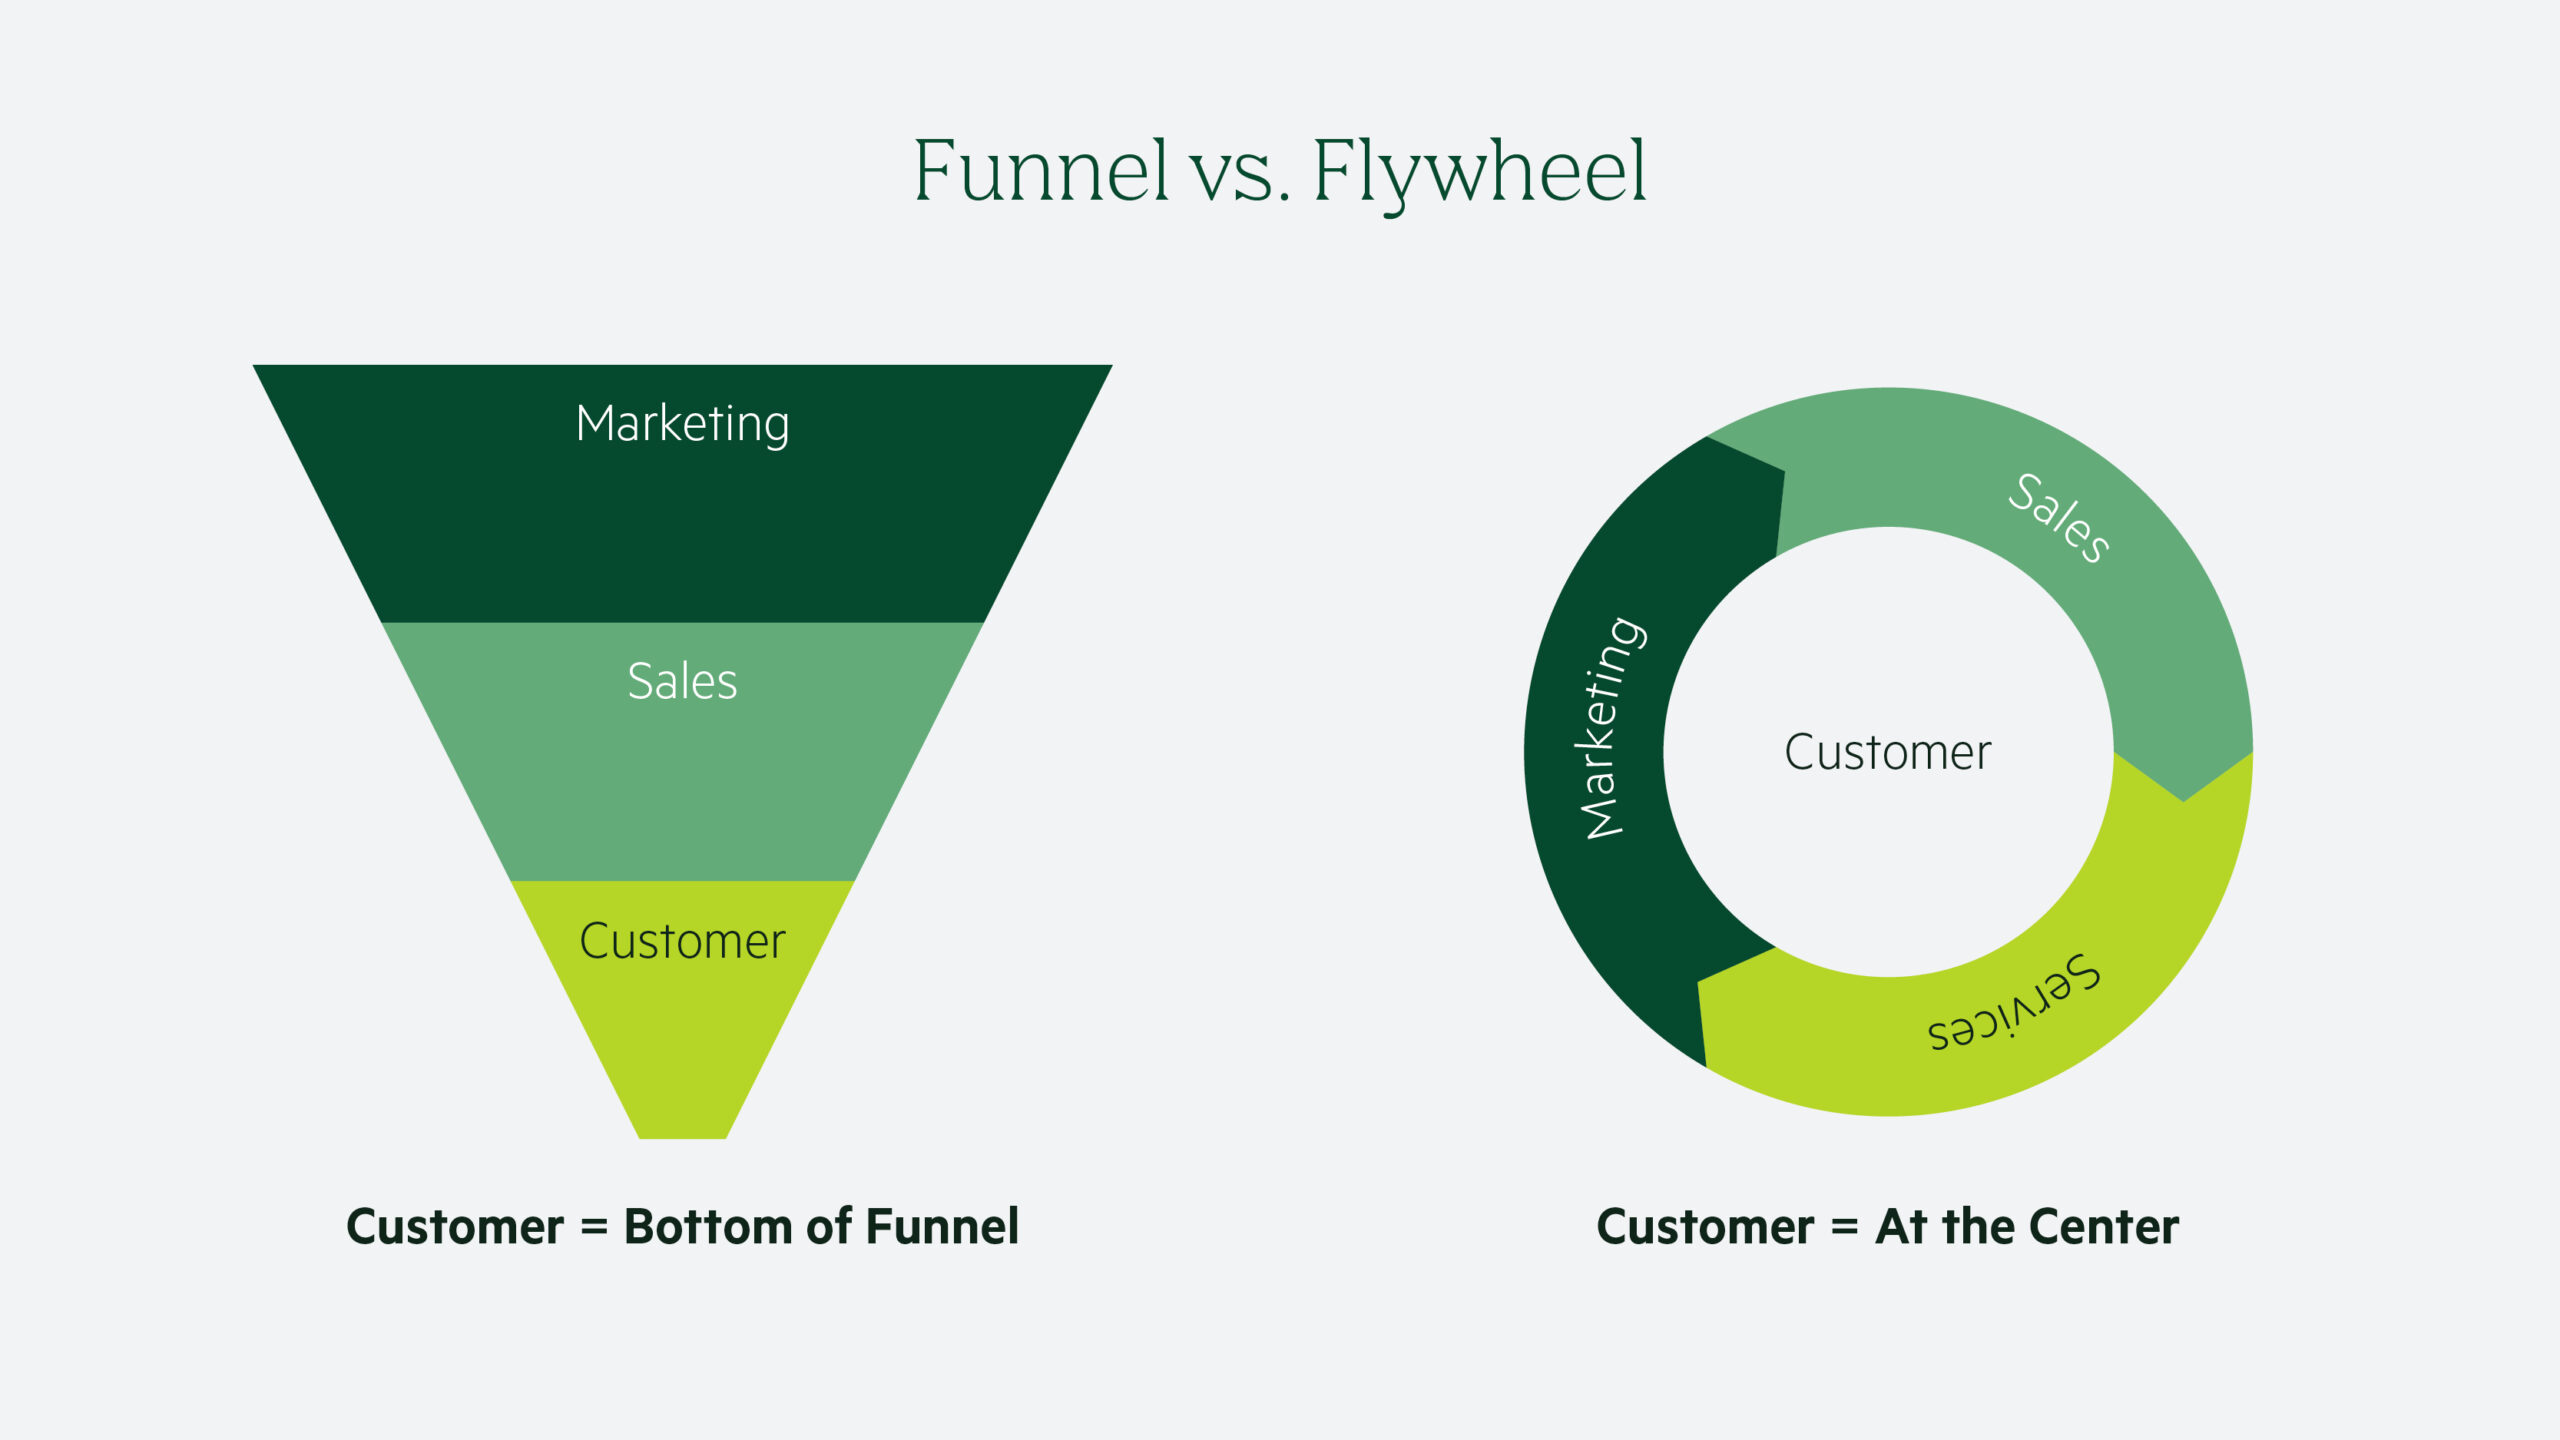 Funnel vs flywheel